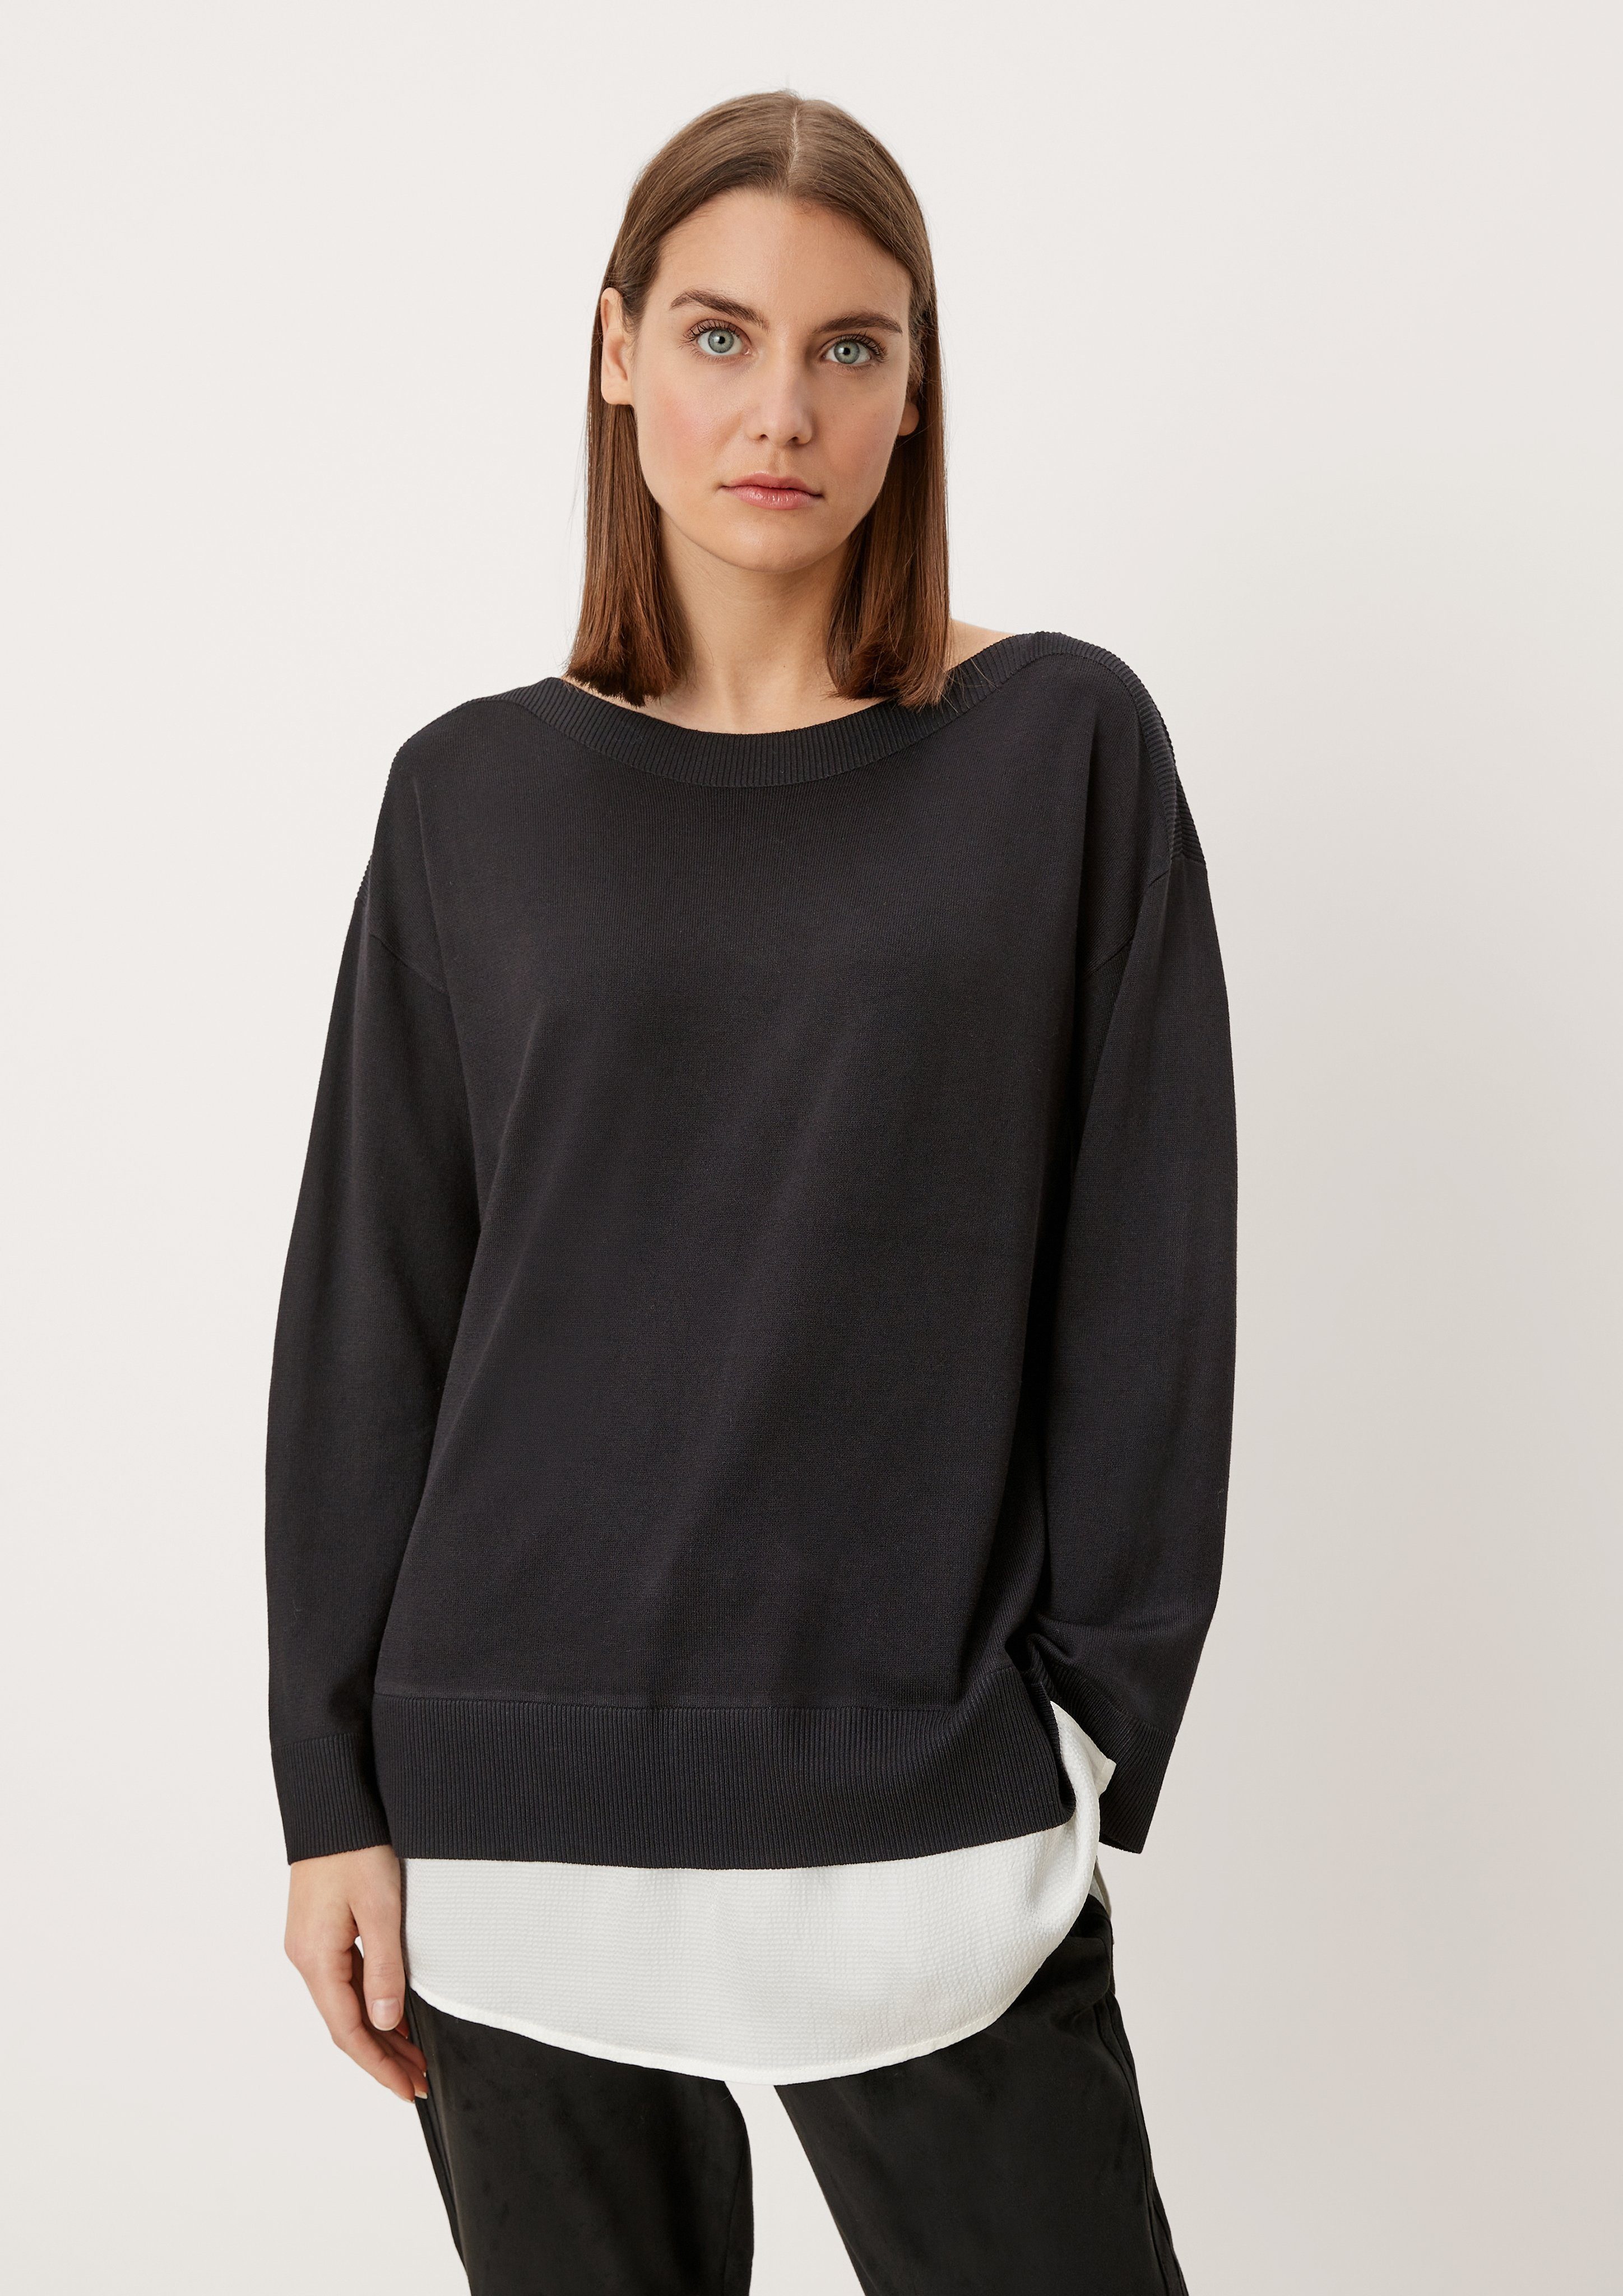 Schwarzer Pullover von s.Oliver Damen Kleidung Hoodies & Pullover Sweater Lange Pullover S.Oliver Lange Pullover 